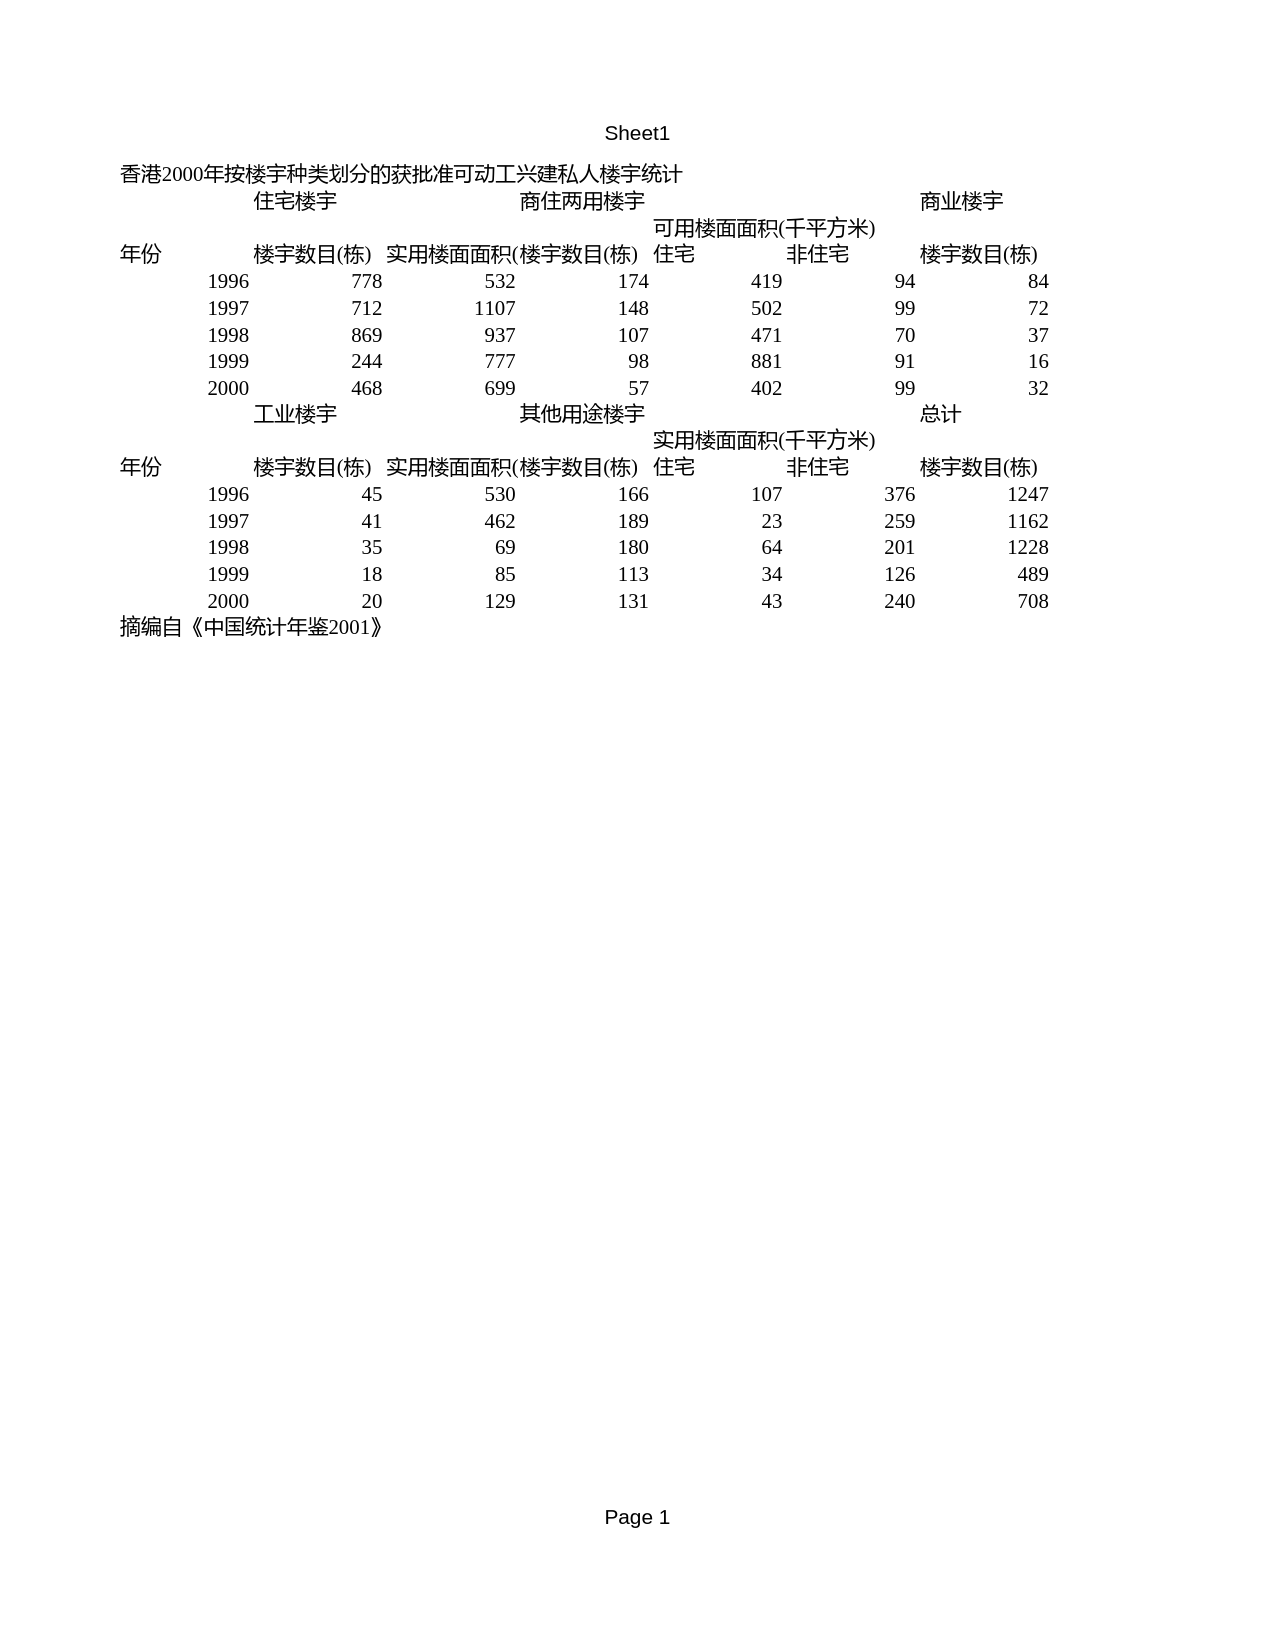 中国统计年鉴2001 香港2000年按楼宇种类划分的获批准可动工兴建私人